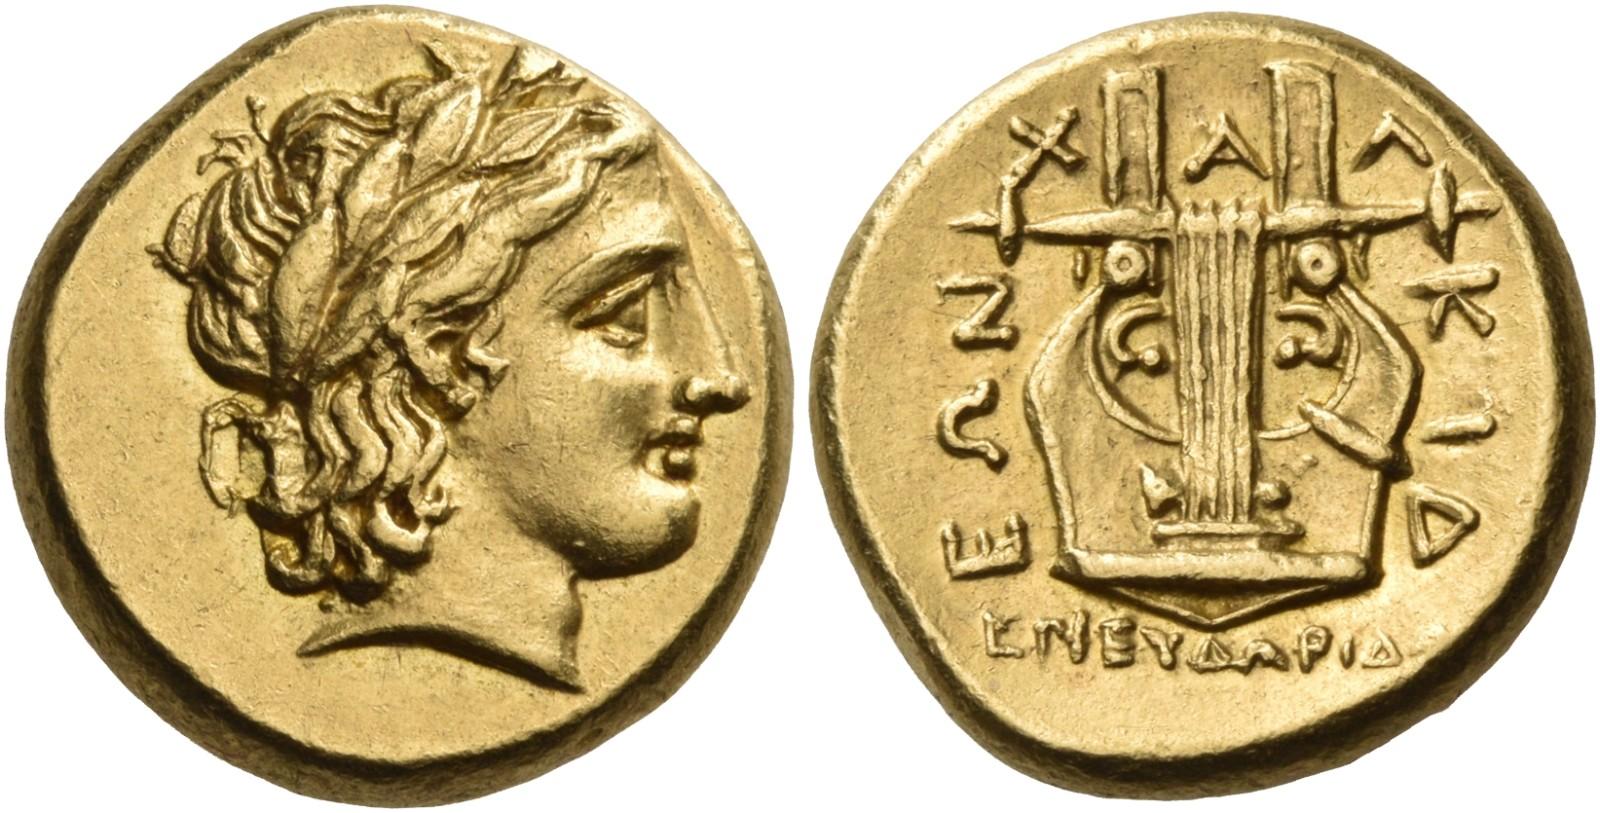 Monedas griegas, romanas, visigodas y españolas en noviembre